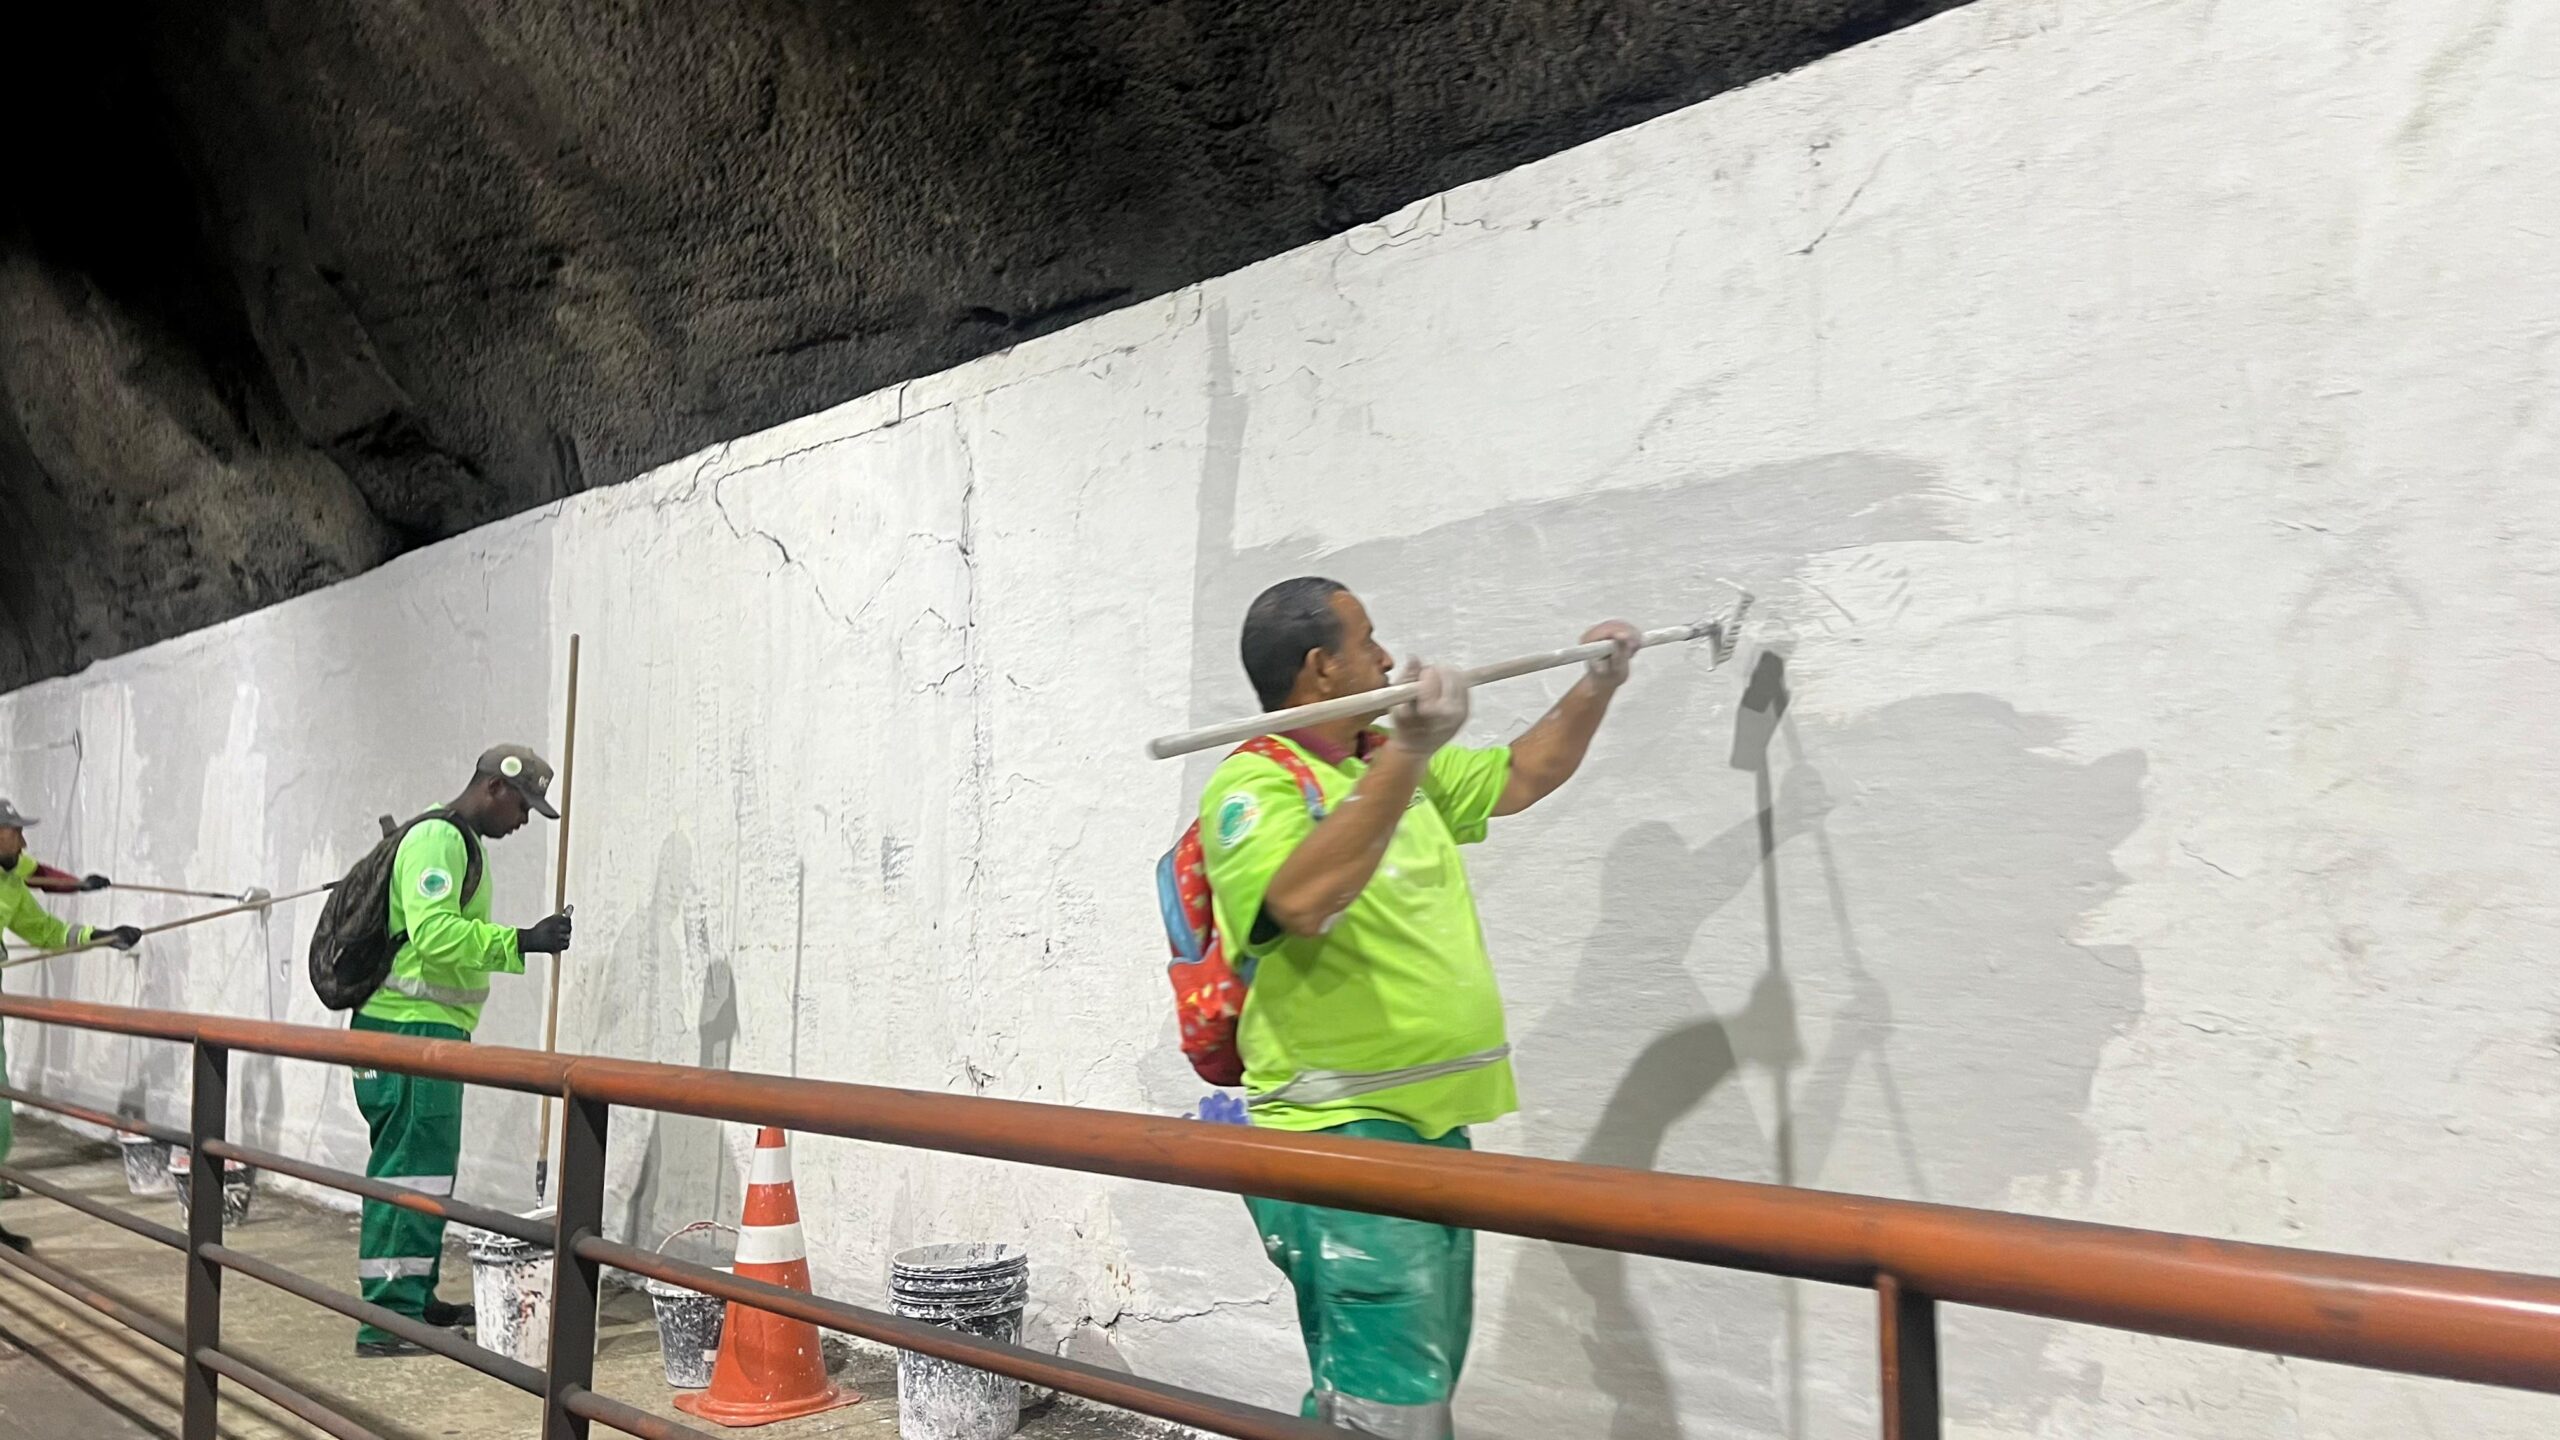 Clin realiza manutenção e limpeza no Túnel Raul Veiga